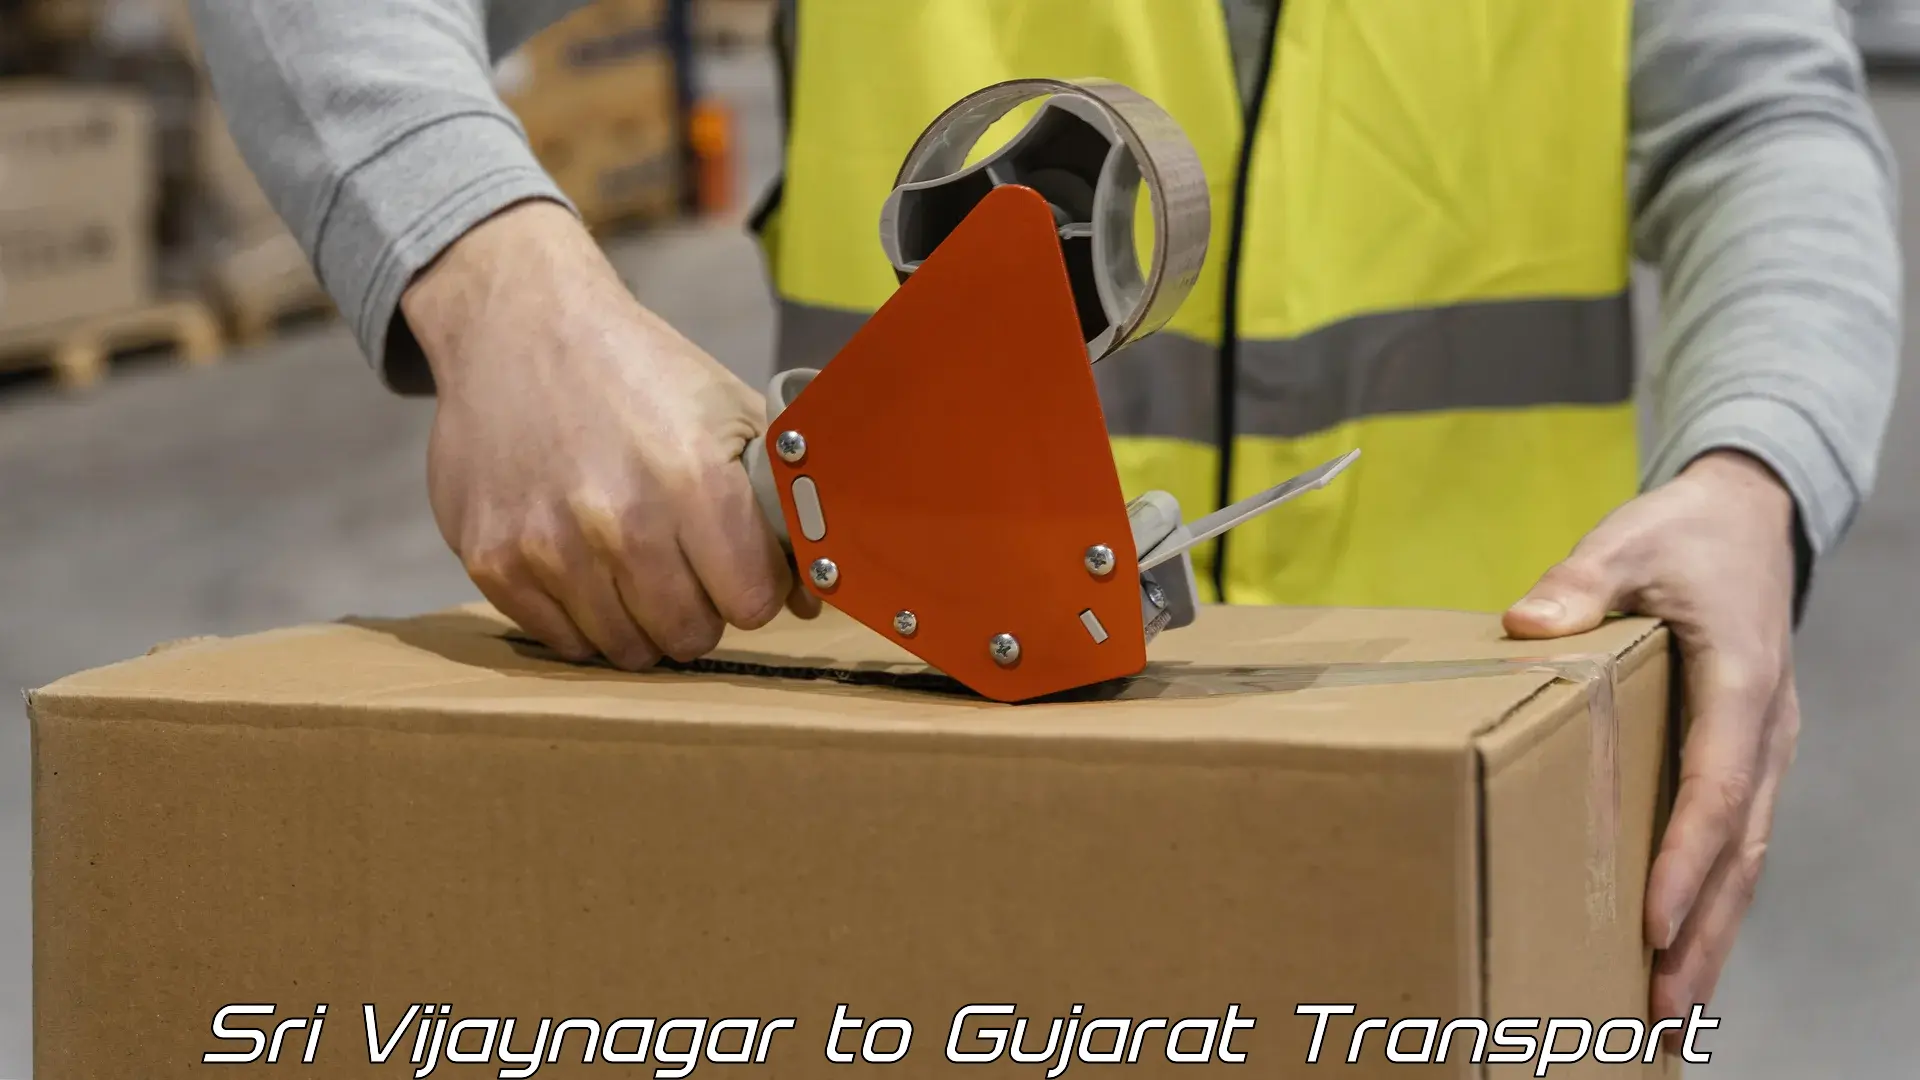 Container transportation services Sri Vijaynagar to Gujarat